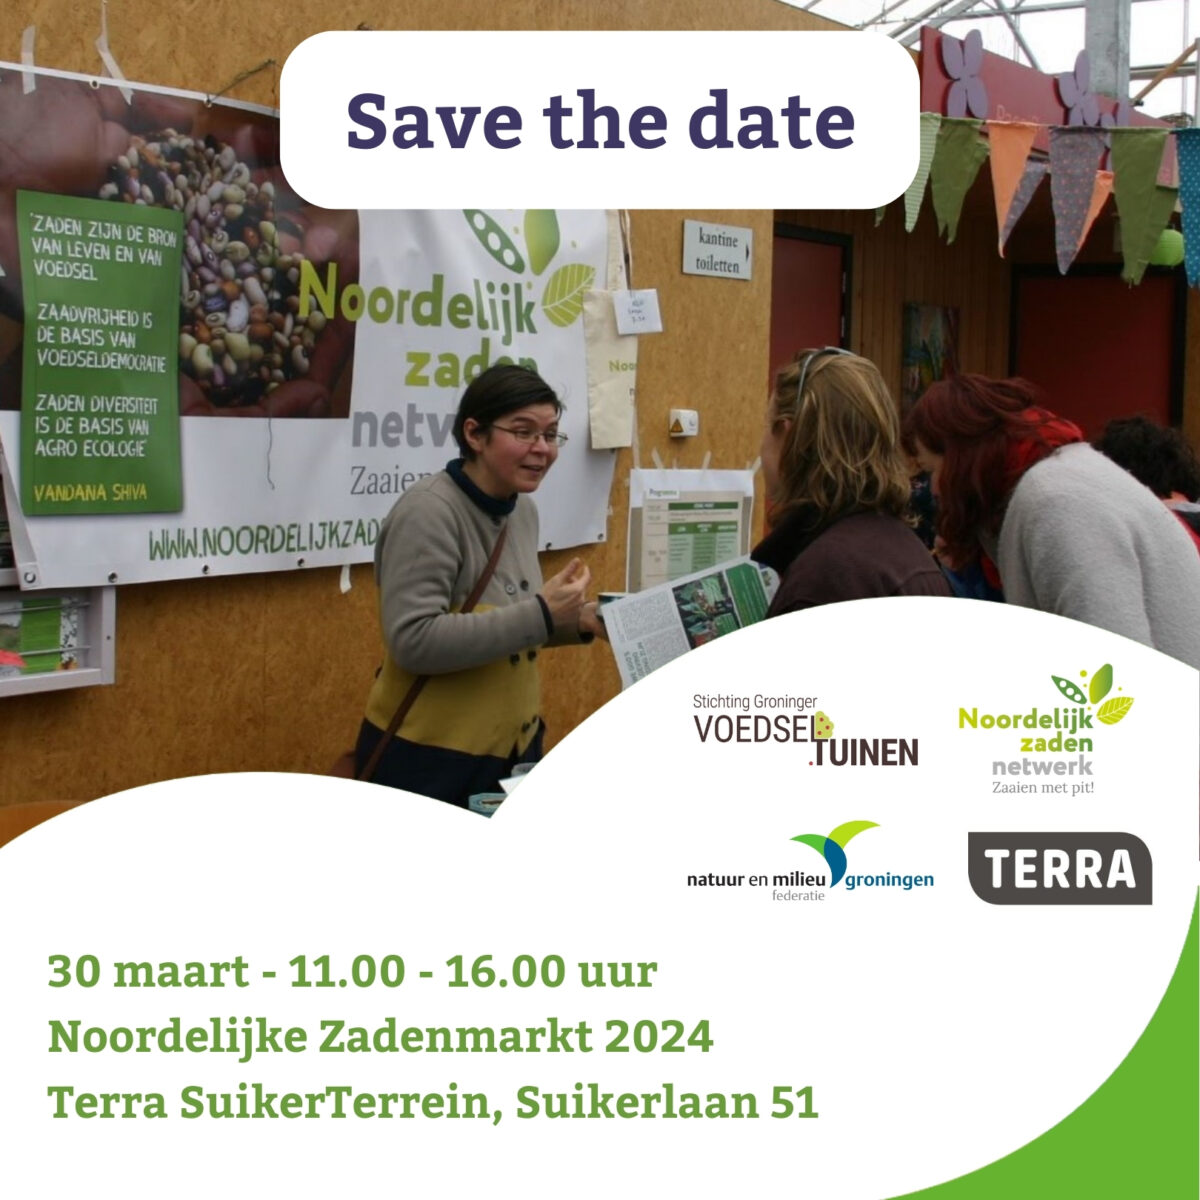 Save the date: Noordelijke Zadenmarkt op zaterdag 30 maart